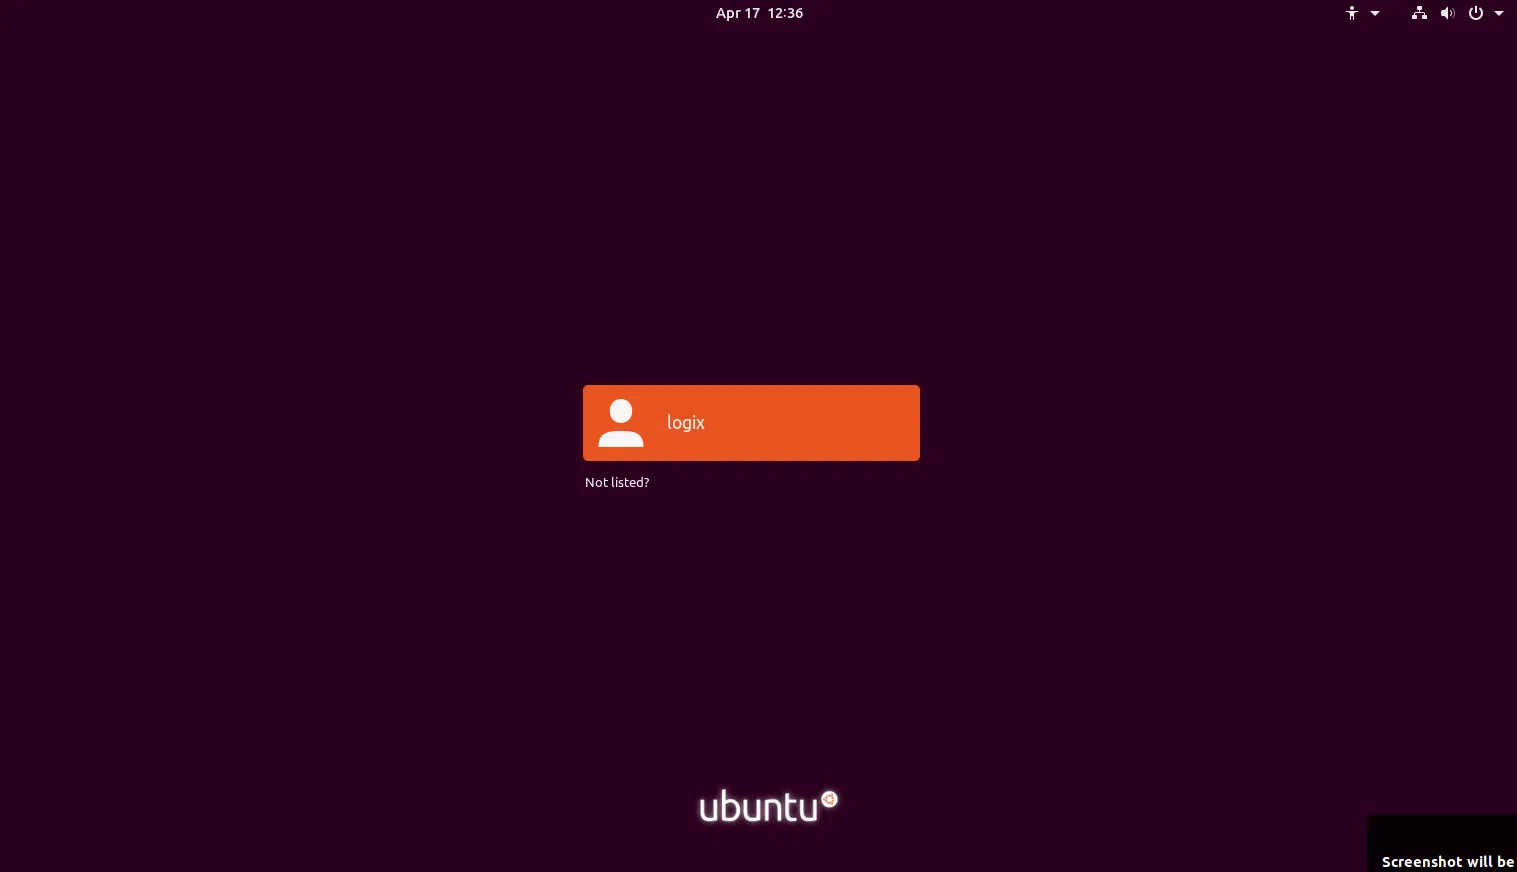 Tela de login do Ubuntu 19.04 Disco Dingo